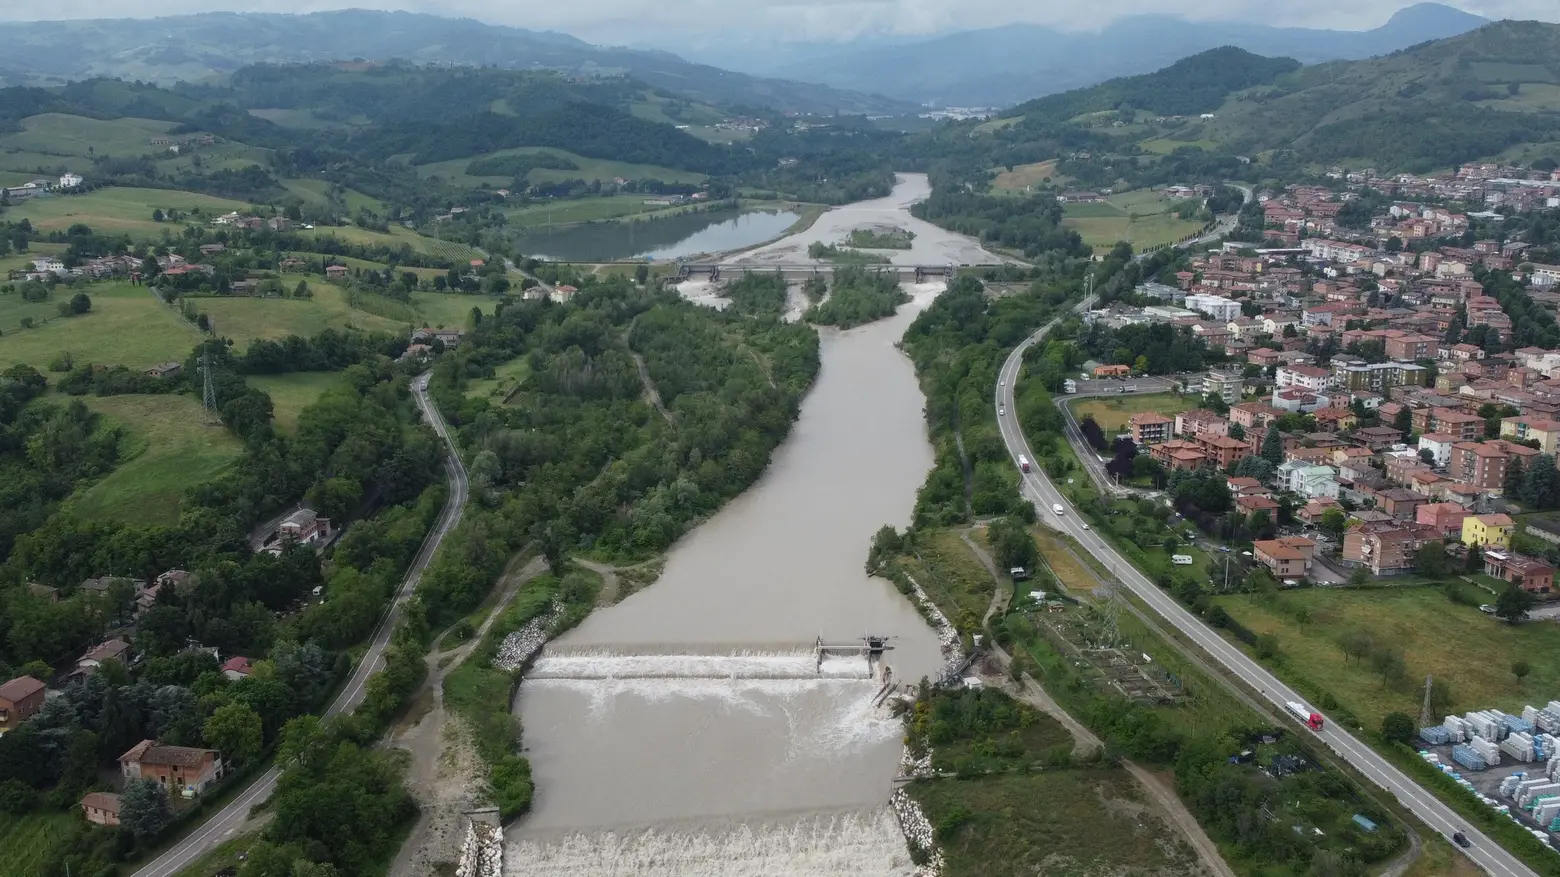 La montagna conta i danni  Frana danneggia l’acquedotto  Decine di strade interrotte